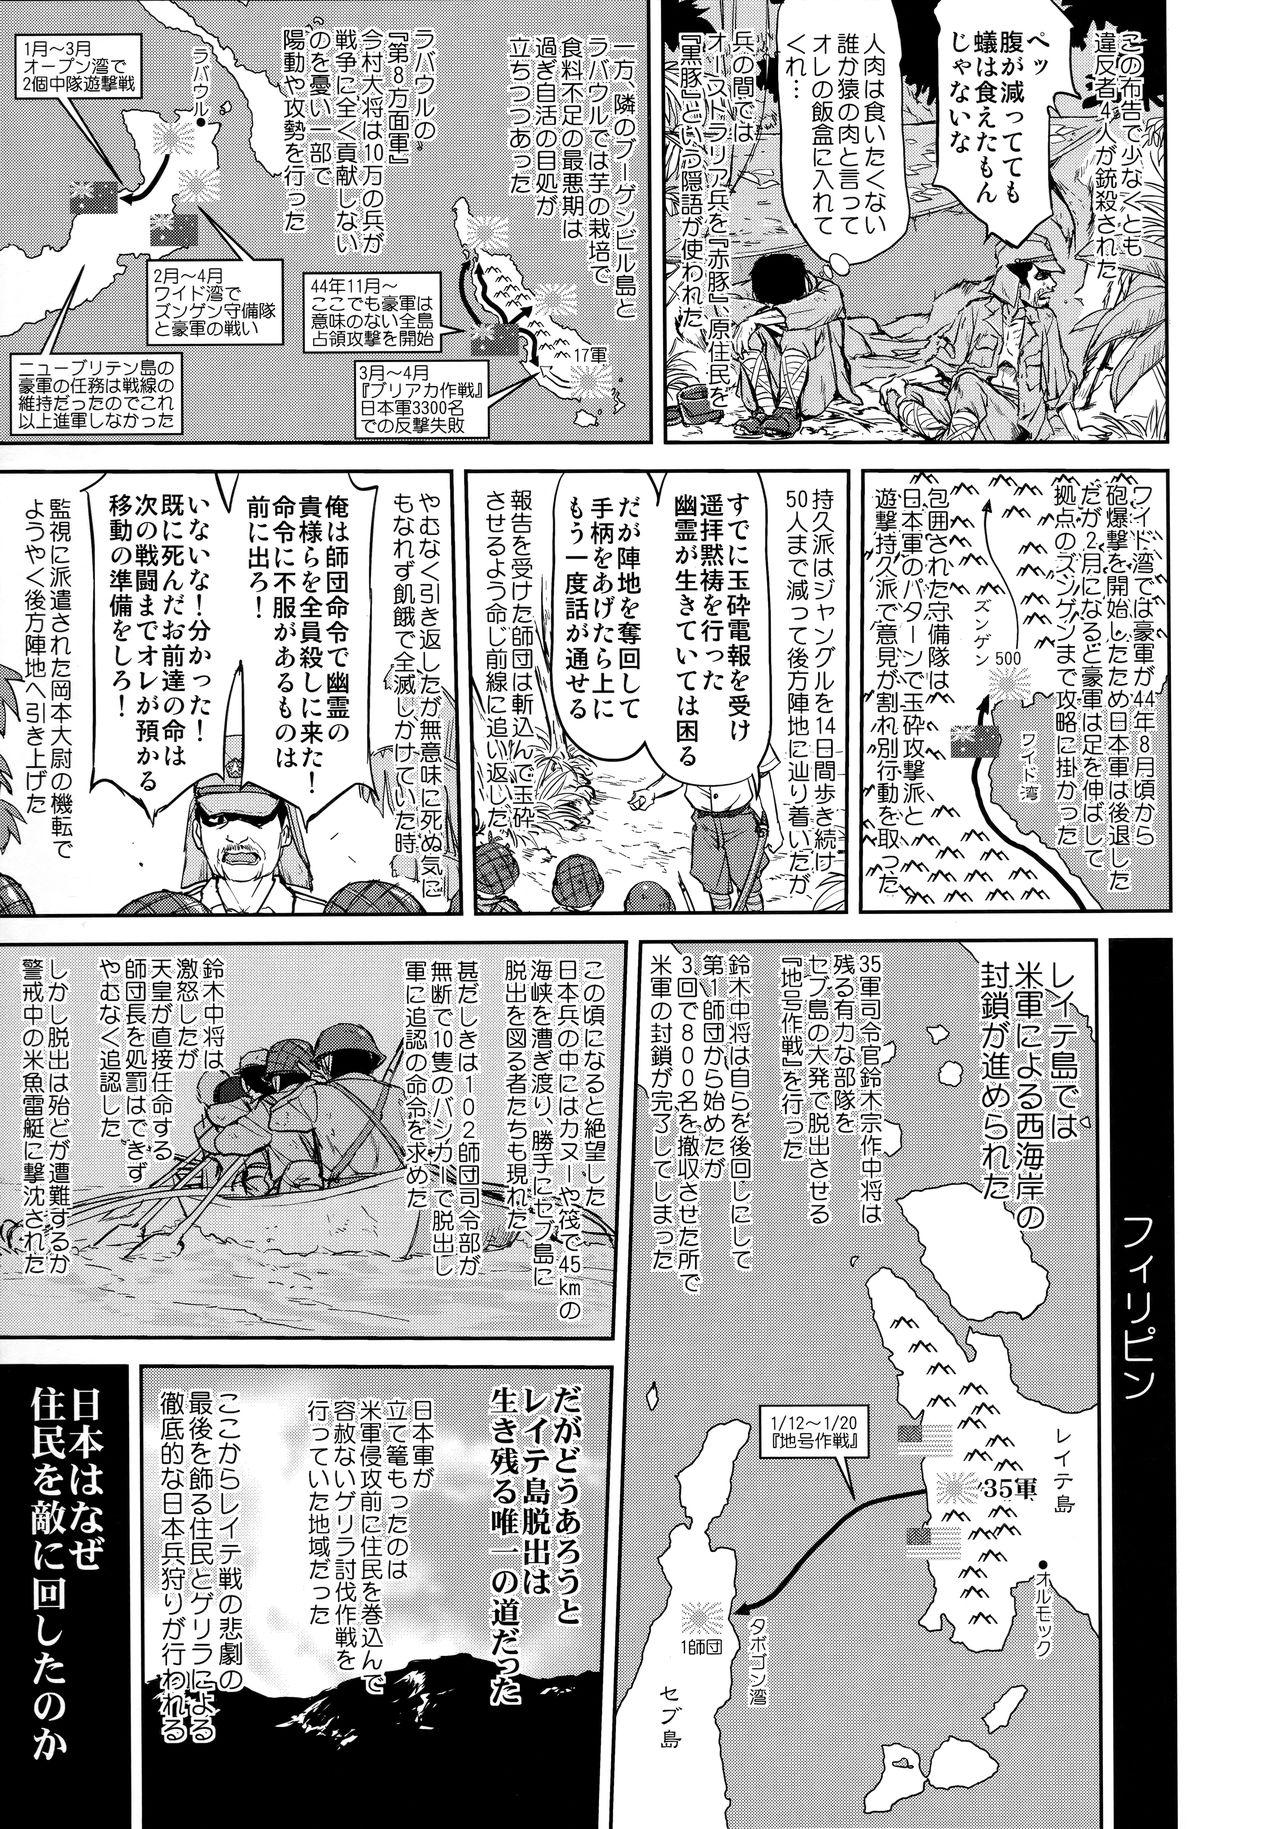 Ass Worship Teitoku no Ketsudan Kanmusu no Ichiban Nagai Hi - Kantai collection Wam - Page 10